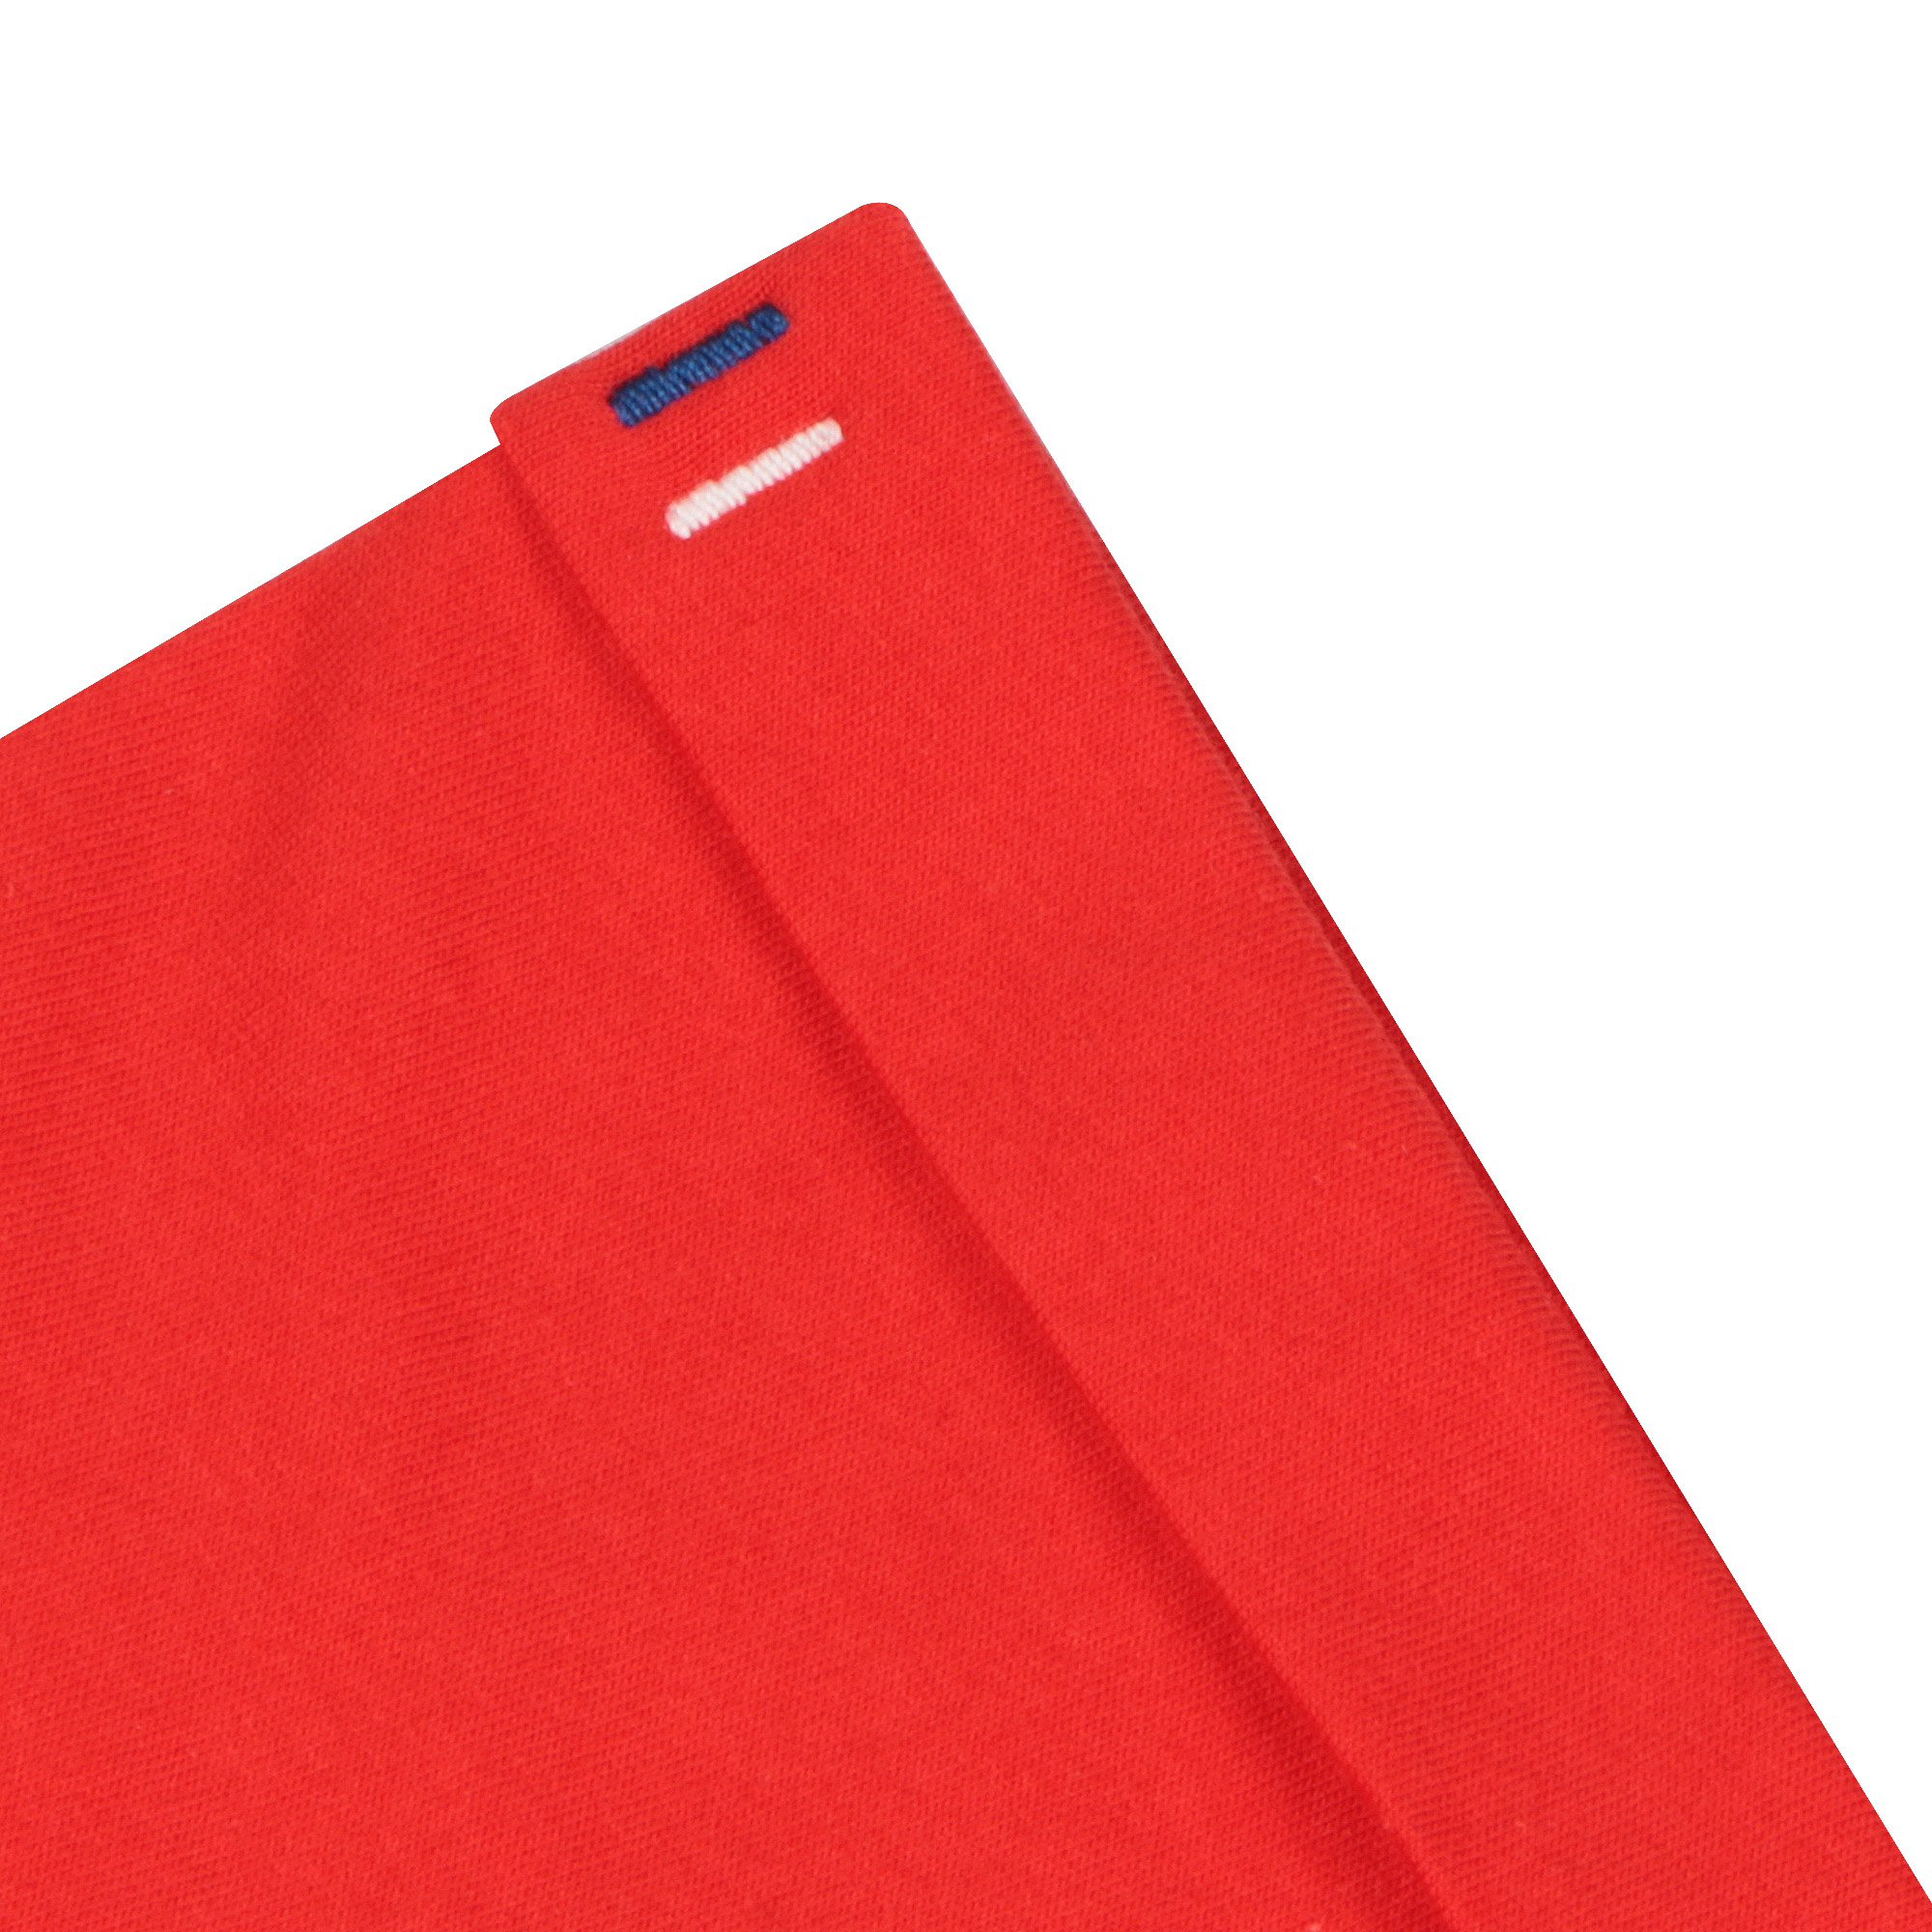 Мужская футболка Pantelemone MF-898 красная 52, цвет красный, размер 52 - фото 5